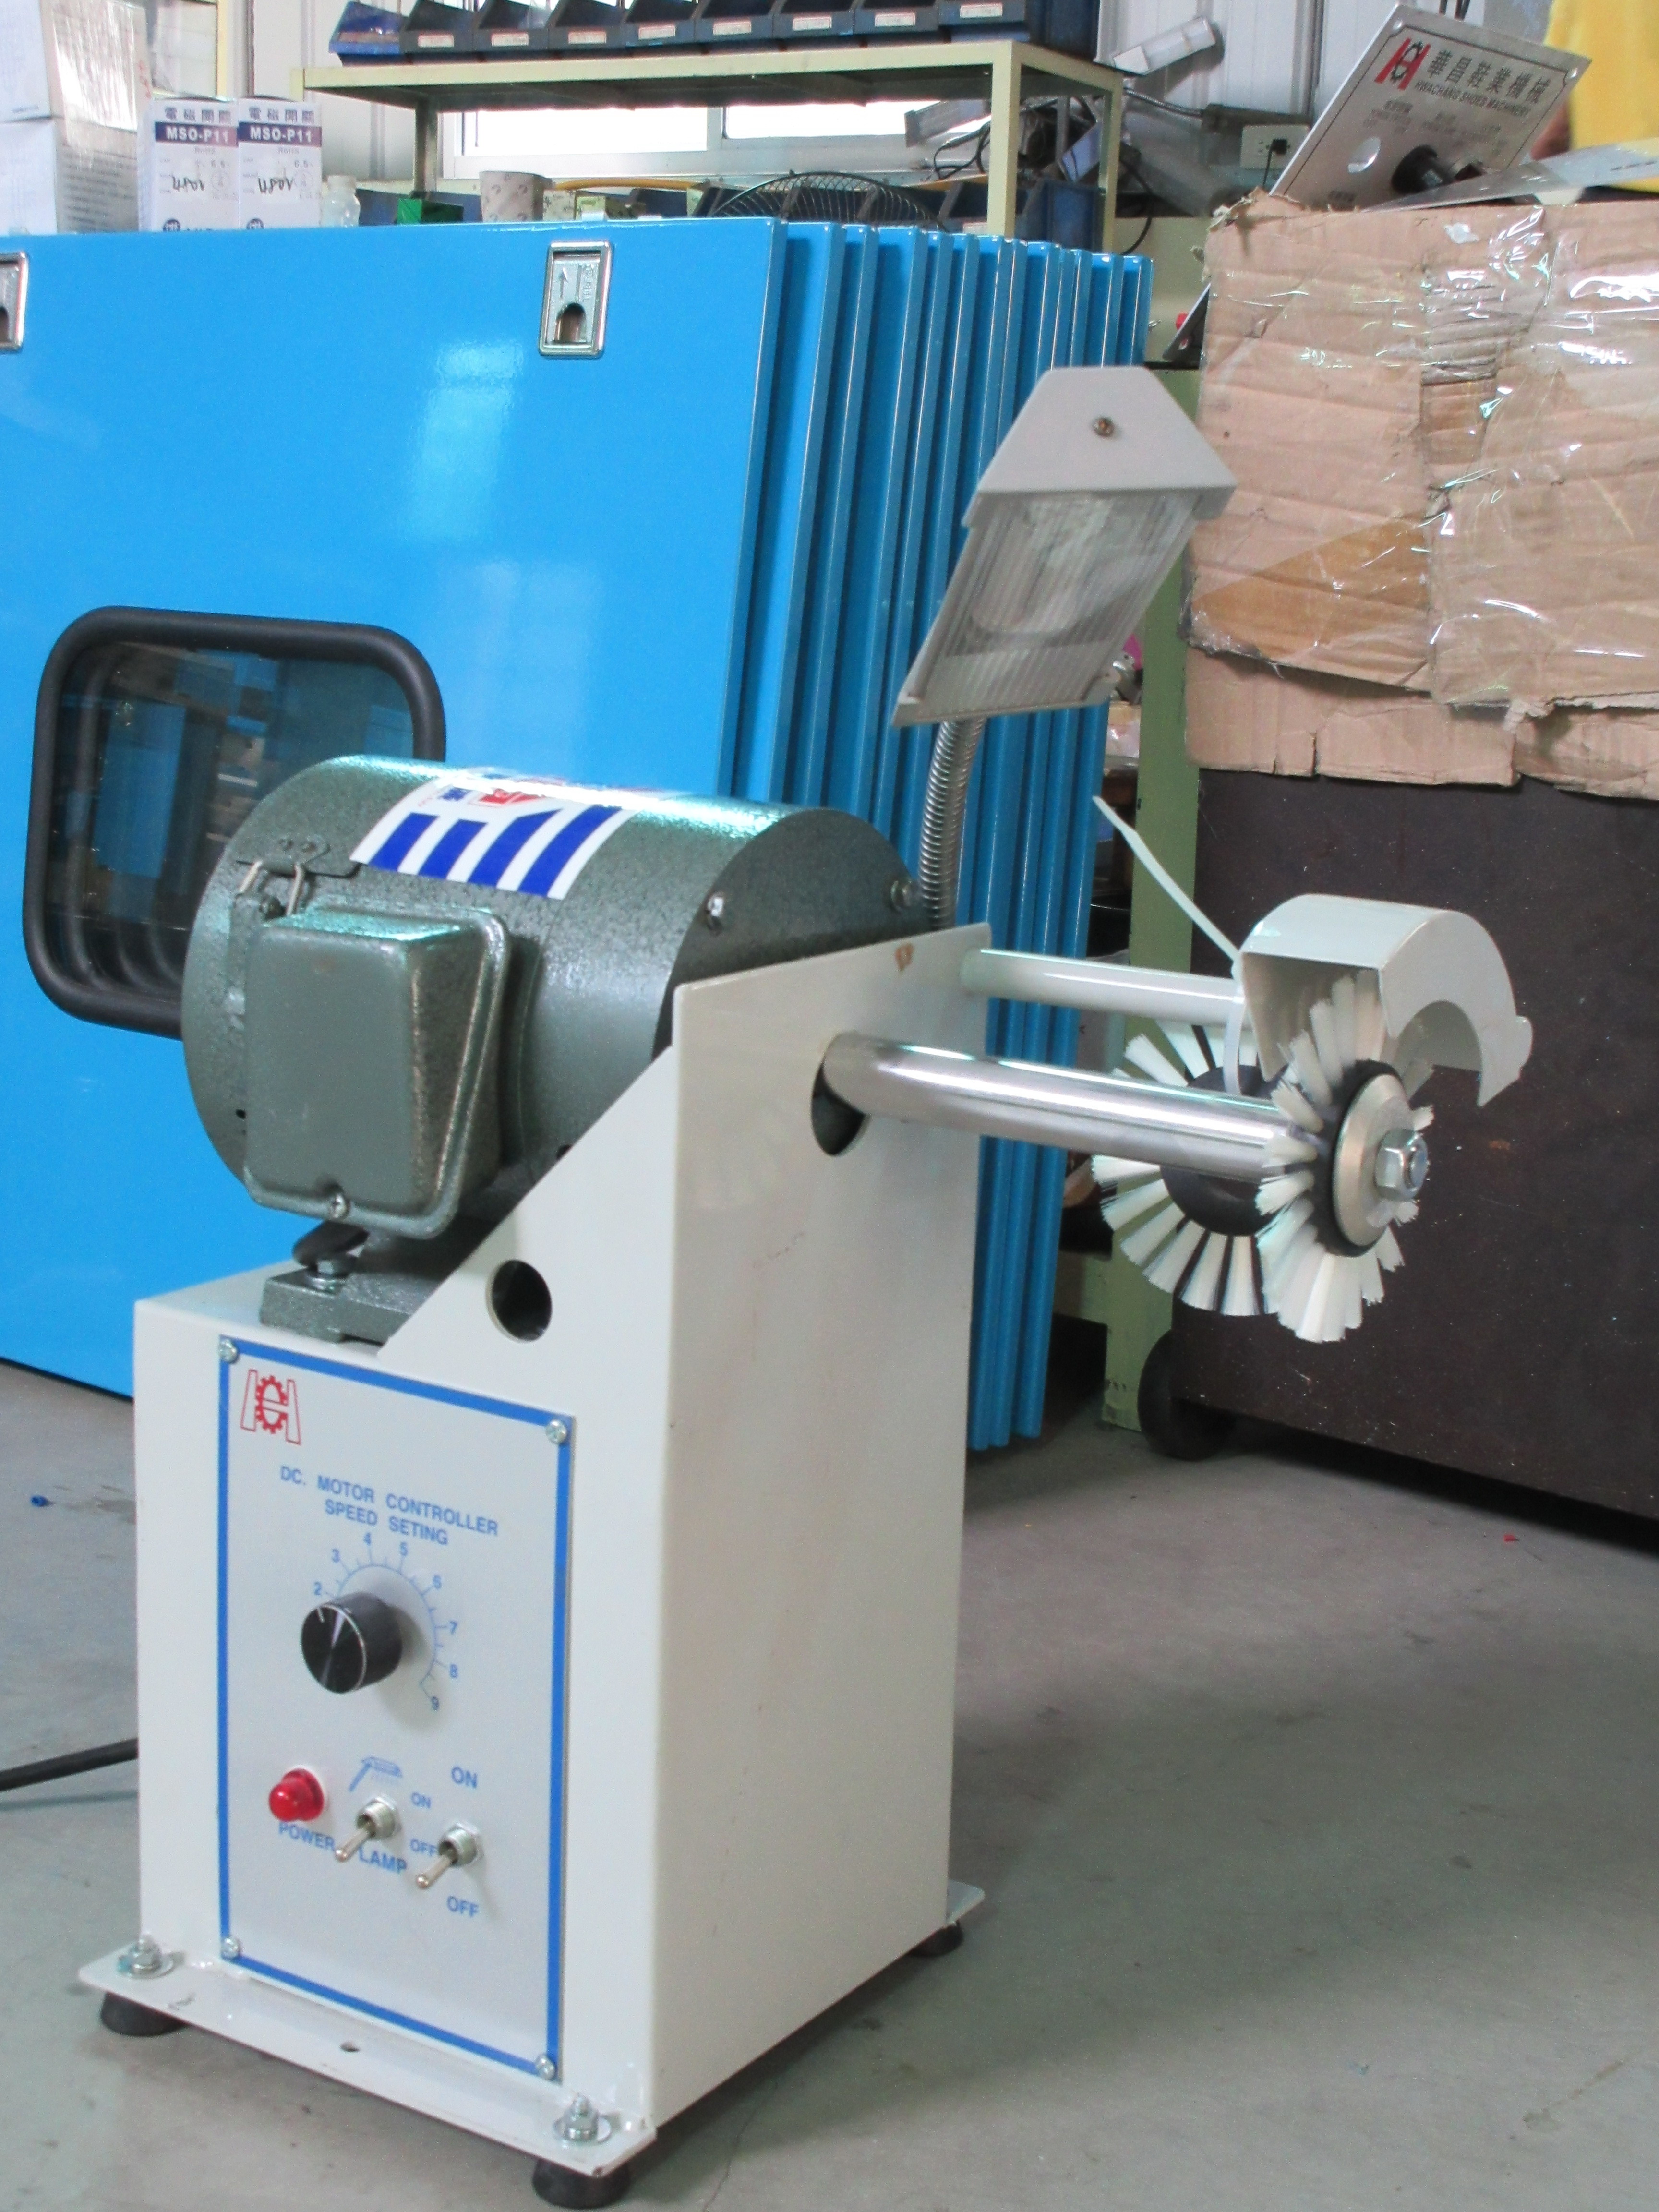 Máquina de limpieza automática de pegamento tipo mesa TS-970